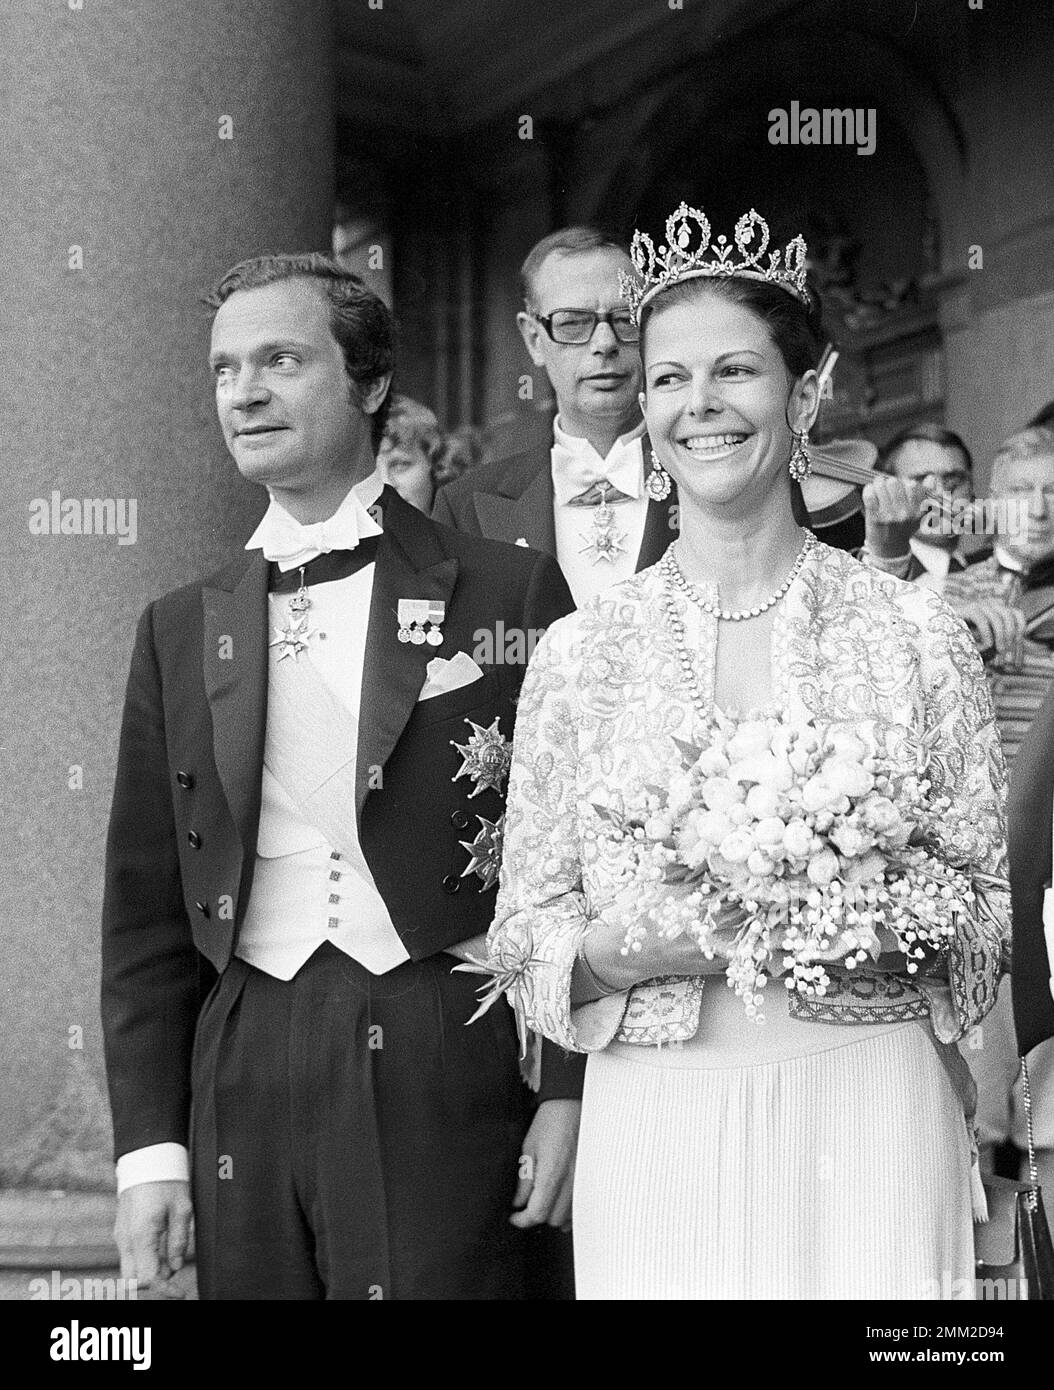 Mariage de Carl XVI Gustaf et Silvia Sommerlath. Carl XVI Gustaf, roi de Suède. Né le 30 avril 1946. Photo dans la soirée la veille de leur mariage lors d'un gala à l'opéra royal de Stockholm le 18 juin 1976. BV55-2 Banque D'Images